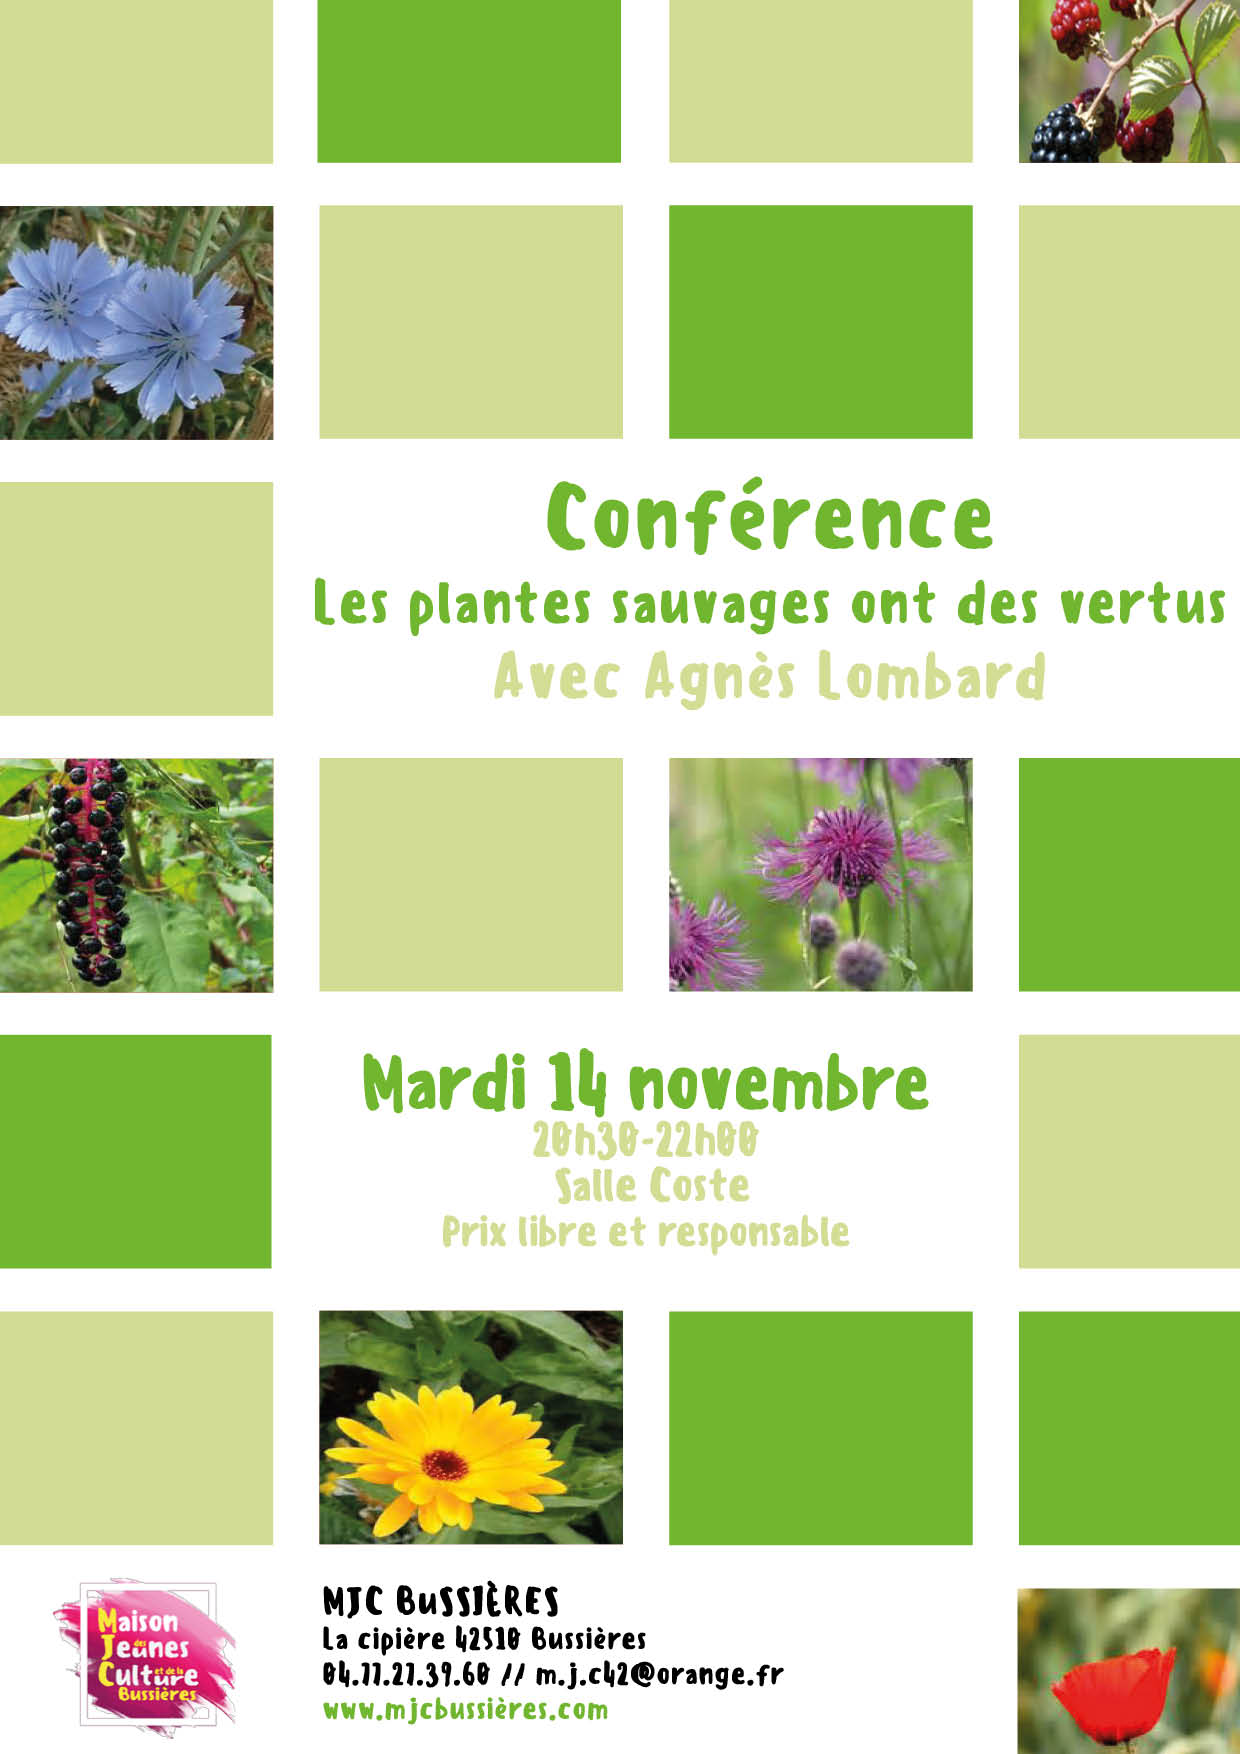 MJC Bussières - Conférence Les plantes sauvages ont des vertus